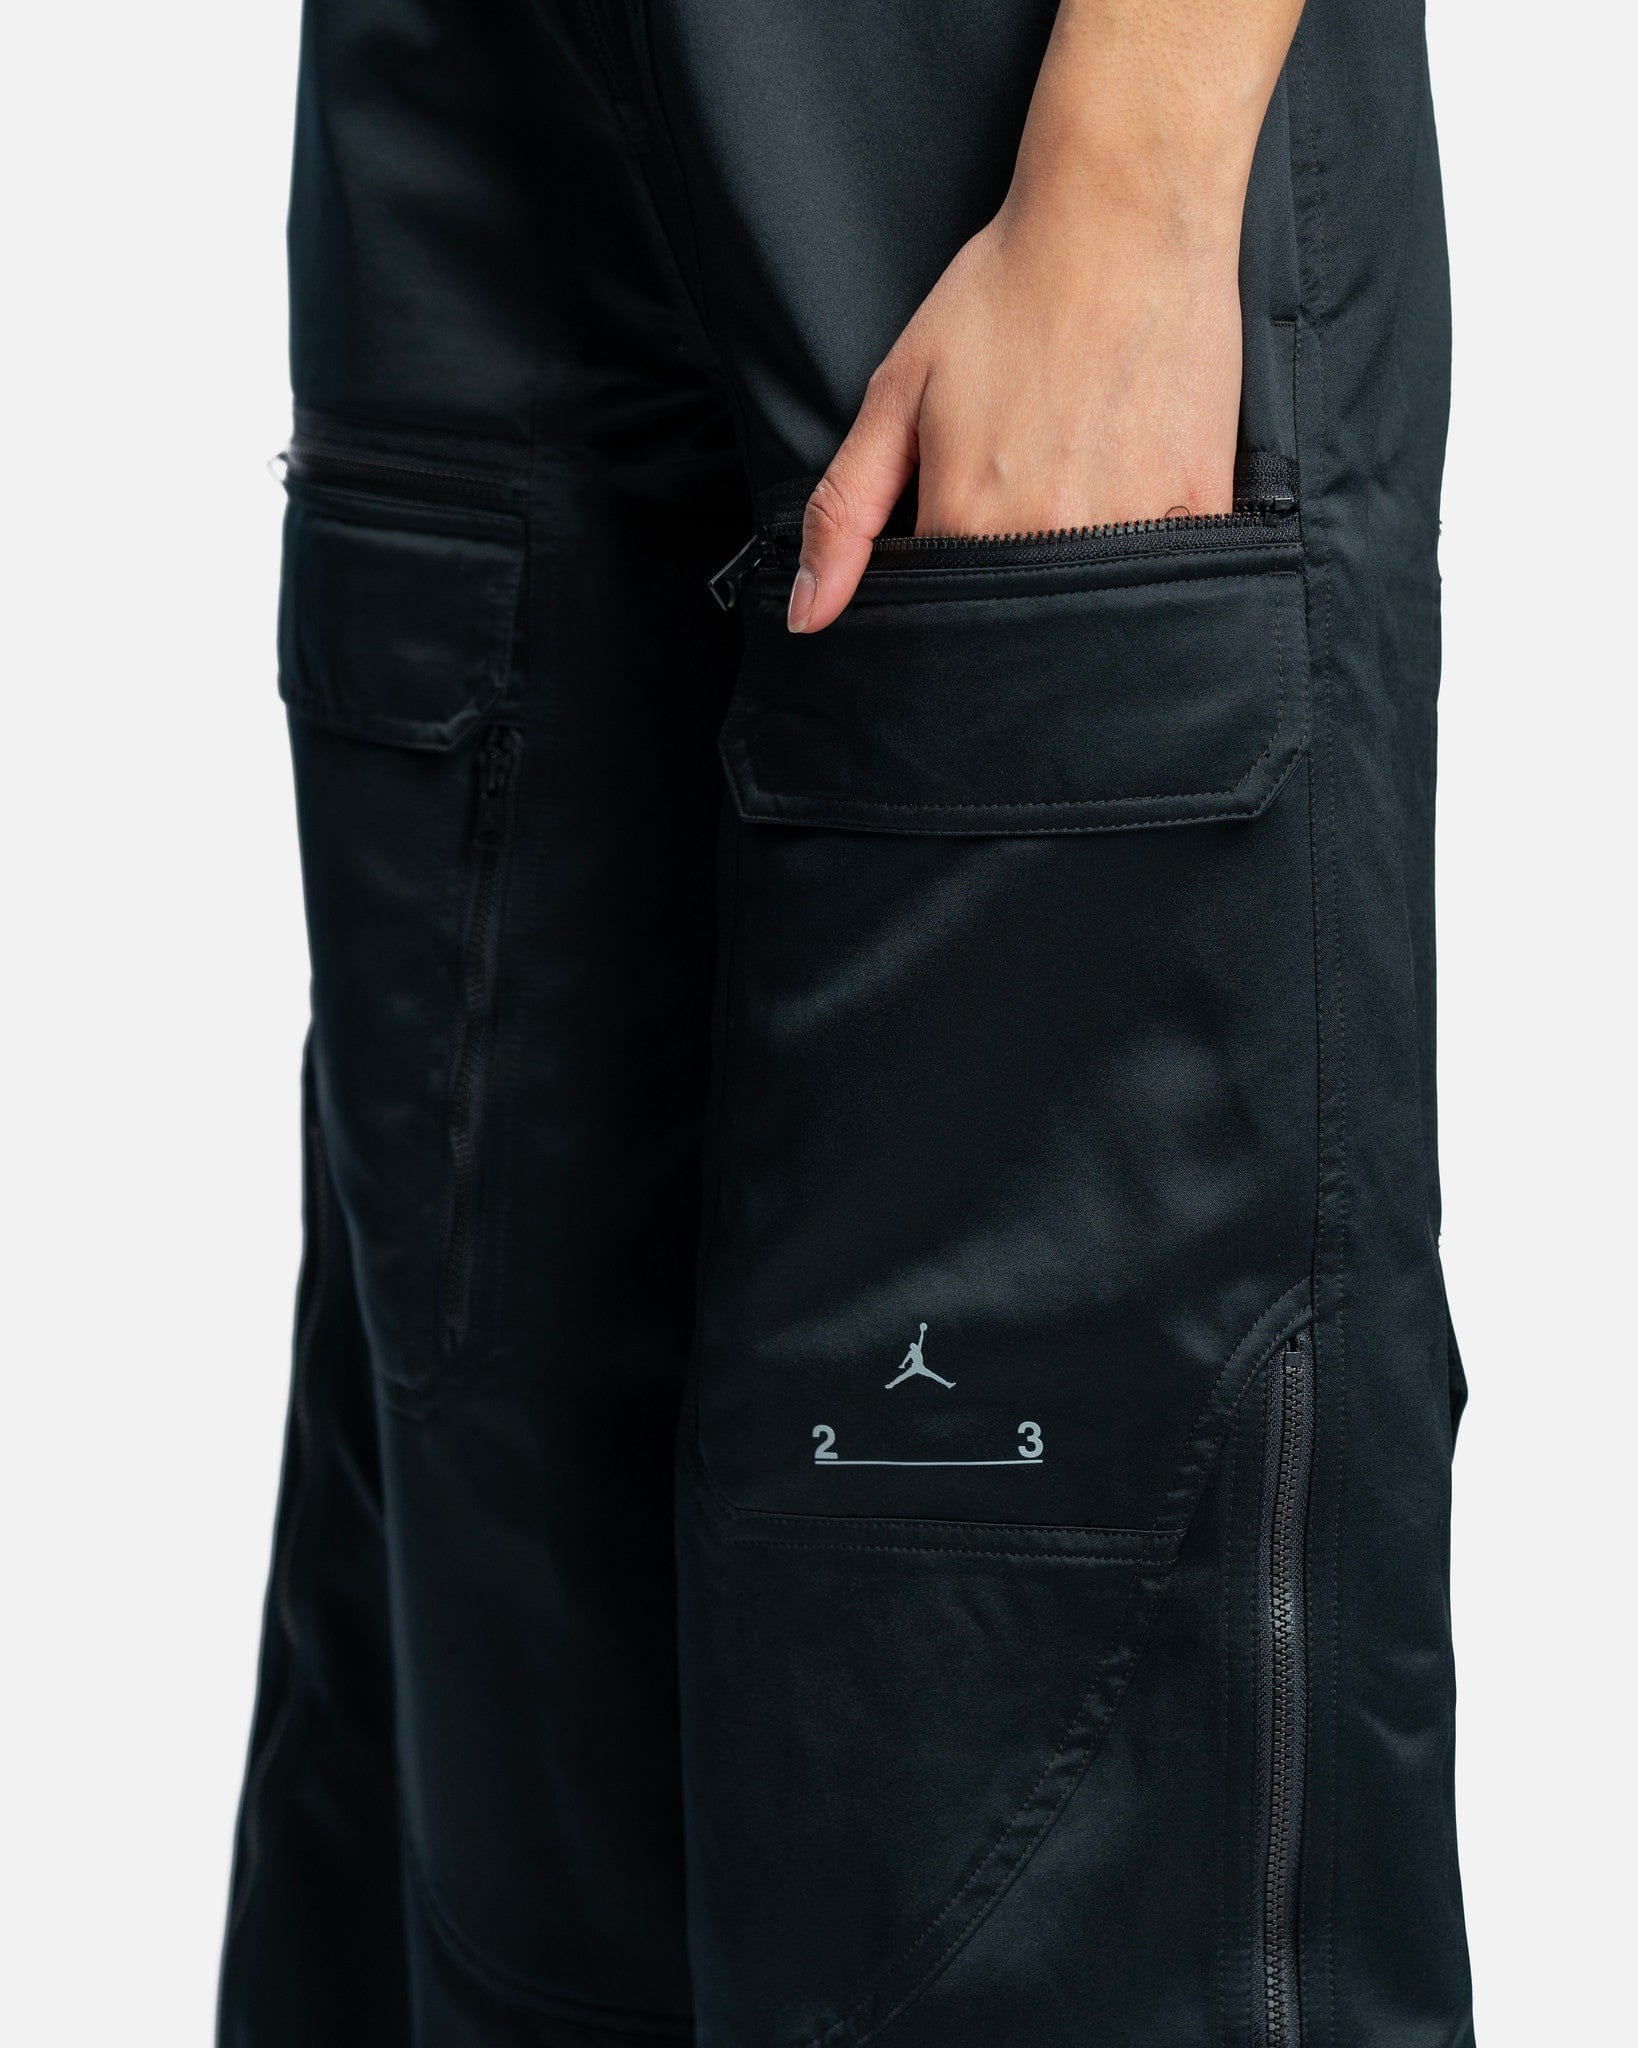 JORDAN Women Pants 23 Engineered Utility Trousers in Black